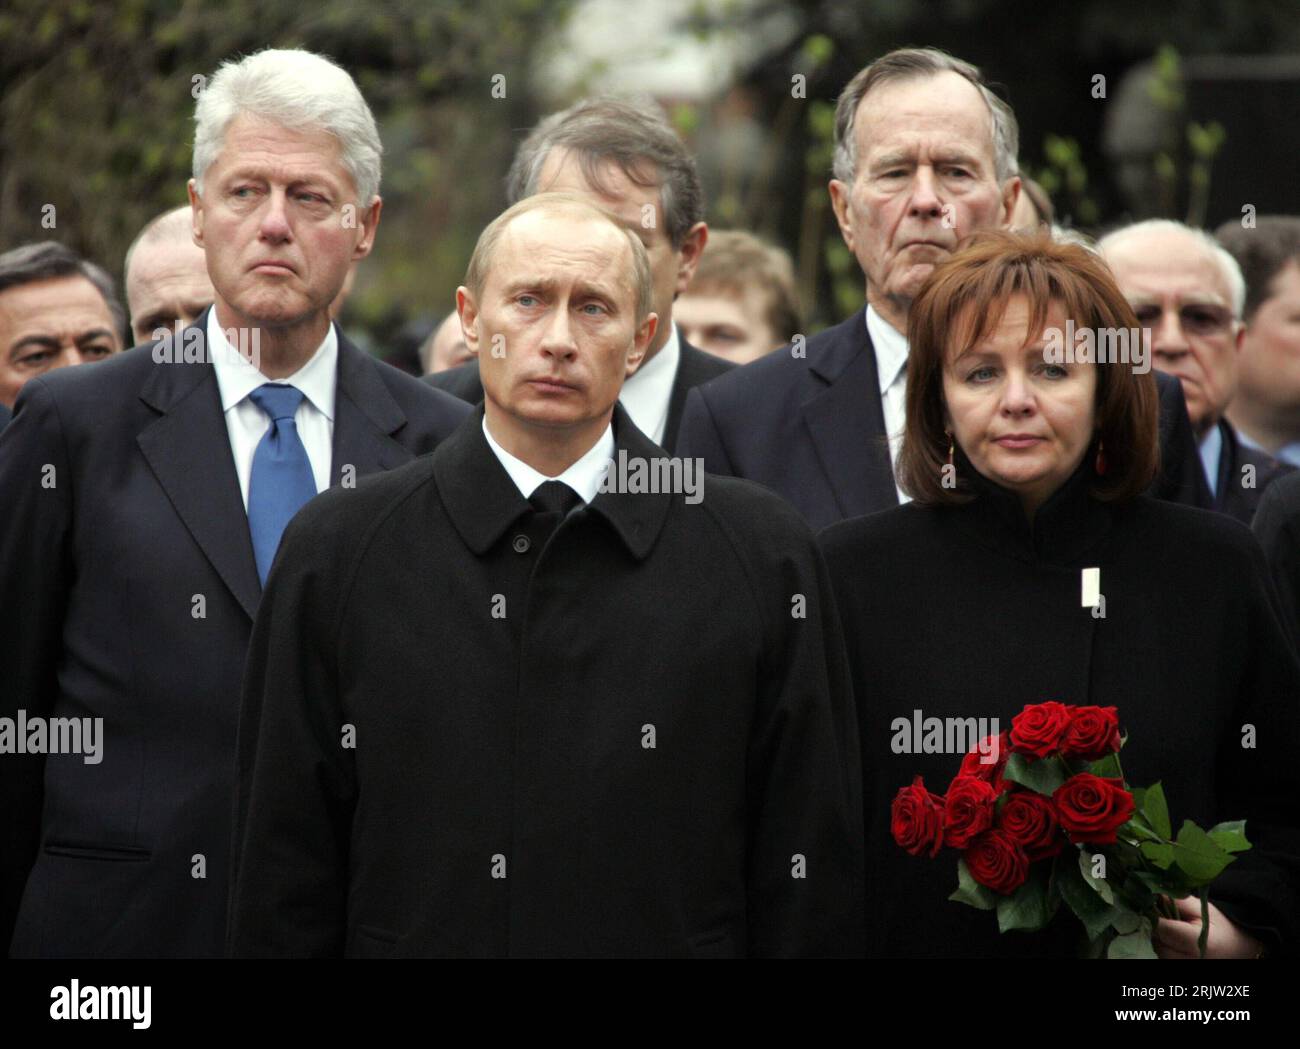 Bildnummer: 51825992  Datum: 25.04.2007  Copyright: imago/Xinhua V.l.n.r.: Bill Clinton (USA), Präsident Vladimir Putin (RUS) George Bush sen. (USA) und Ludmilla Putin (RUS) anlässlich der Beerdigung des verstorbenen Boris Jelzin in Moskau - PUBLICATIONxNOTxINxCHN, Personen, pessimistisch; 2007, Moskau, Fradkow, Wladimir, Beerdigung, Trauergäste, Trauergast, Beerdigung, Beisetzung, Gedenken, Trauer, Begräbnis, Staatsbegräbnis, Politik, Politiker, Lyudmila,  Paar, Ehepaar,; , quer, Kbdig, Gruppenbild, close, Russland, Randbild, People Stock Photo